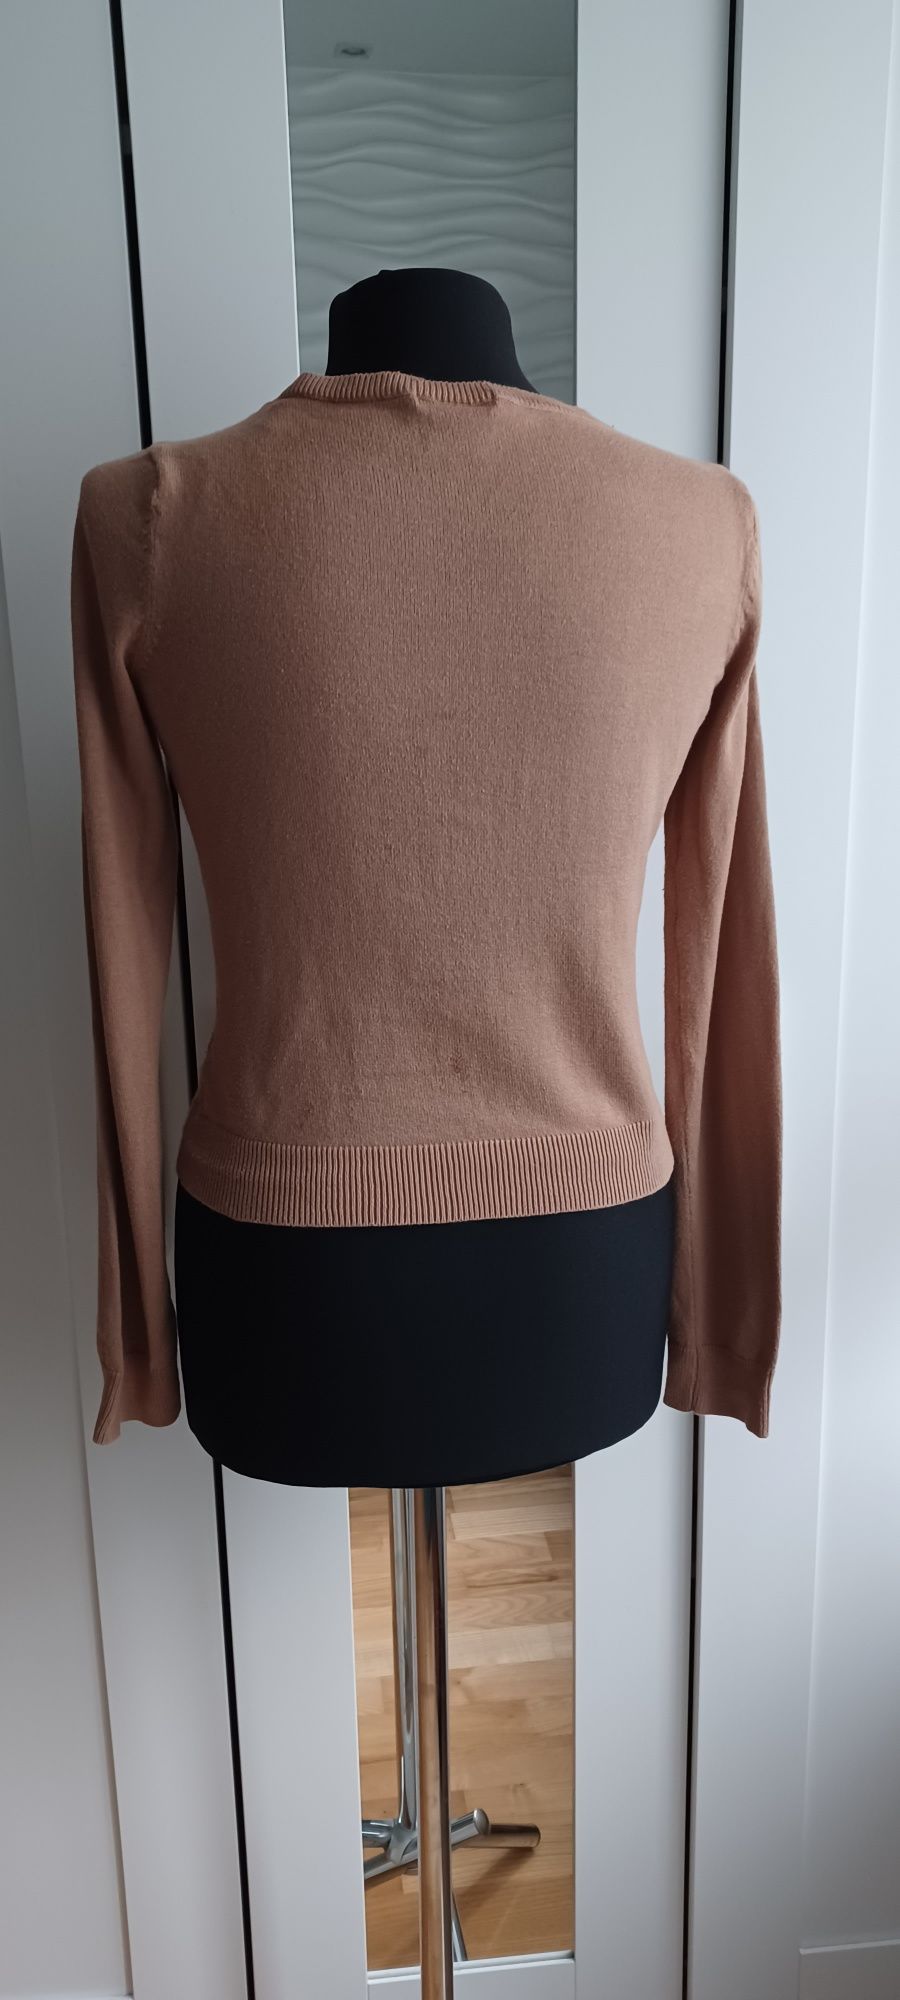 Sweterek damski rozpinany brązowy XS H&M